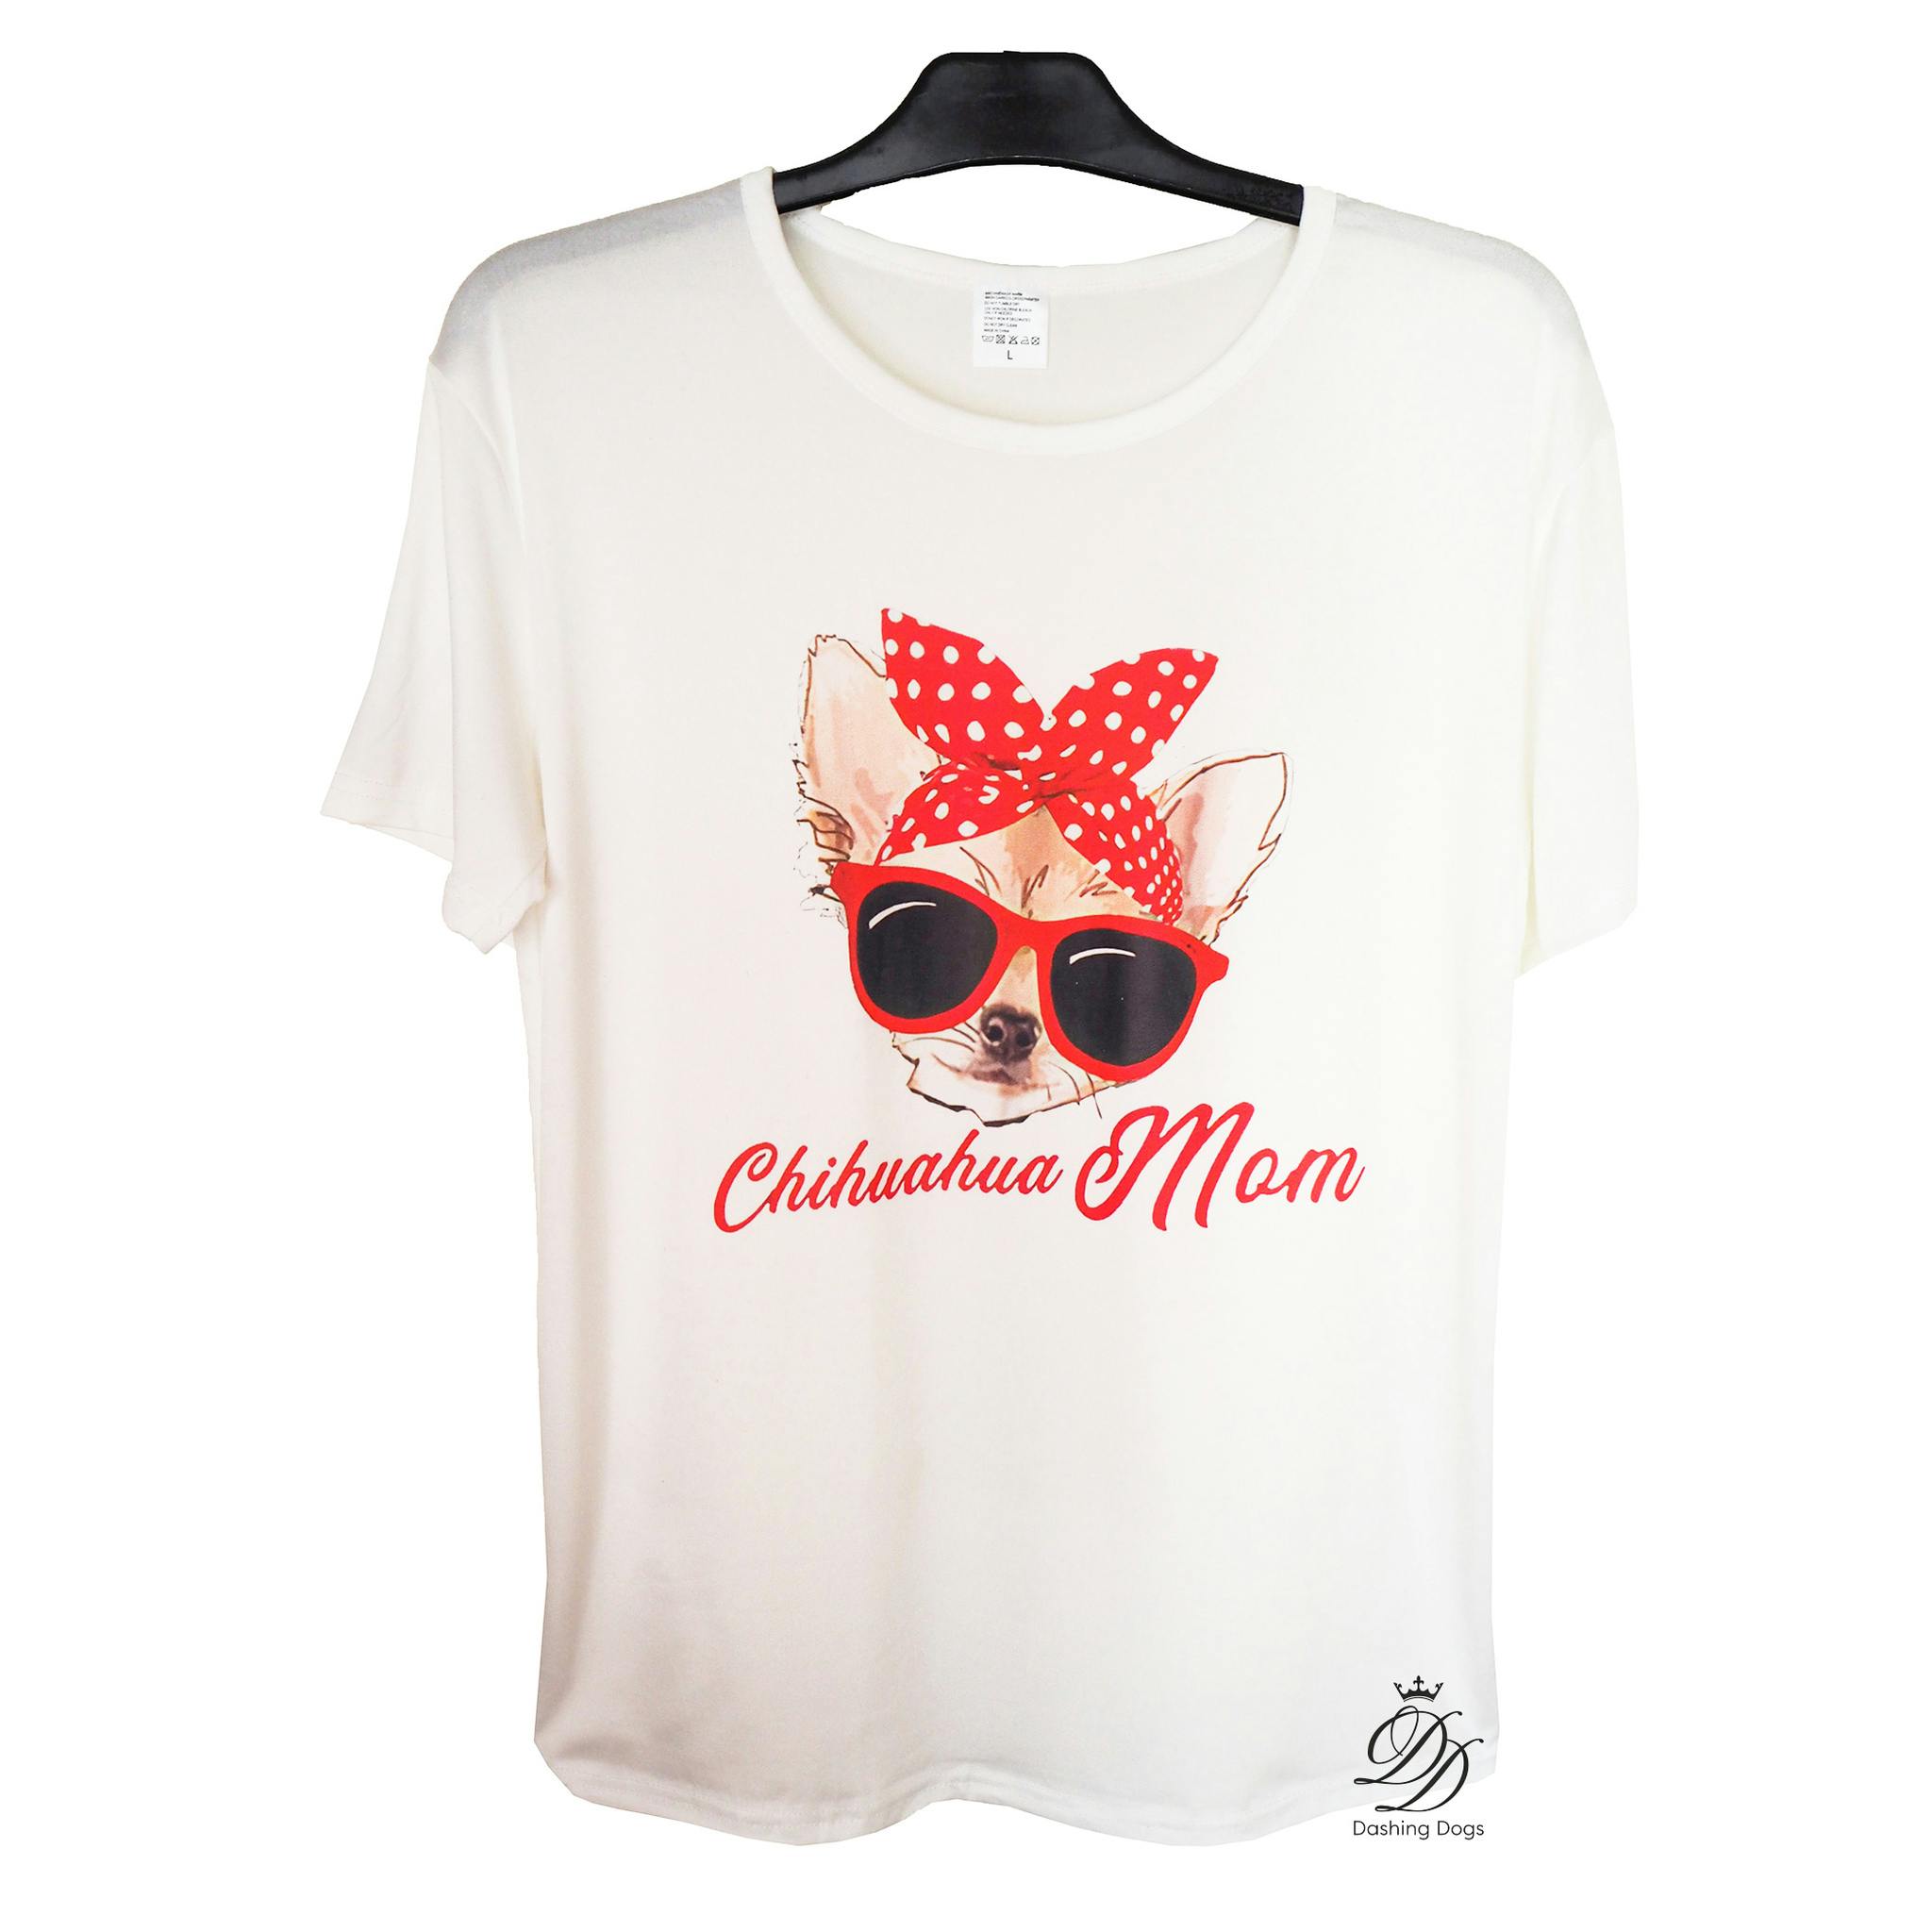 Chihuahua Mom T-shirt